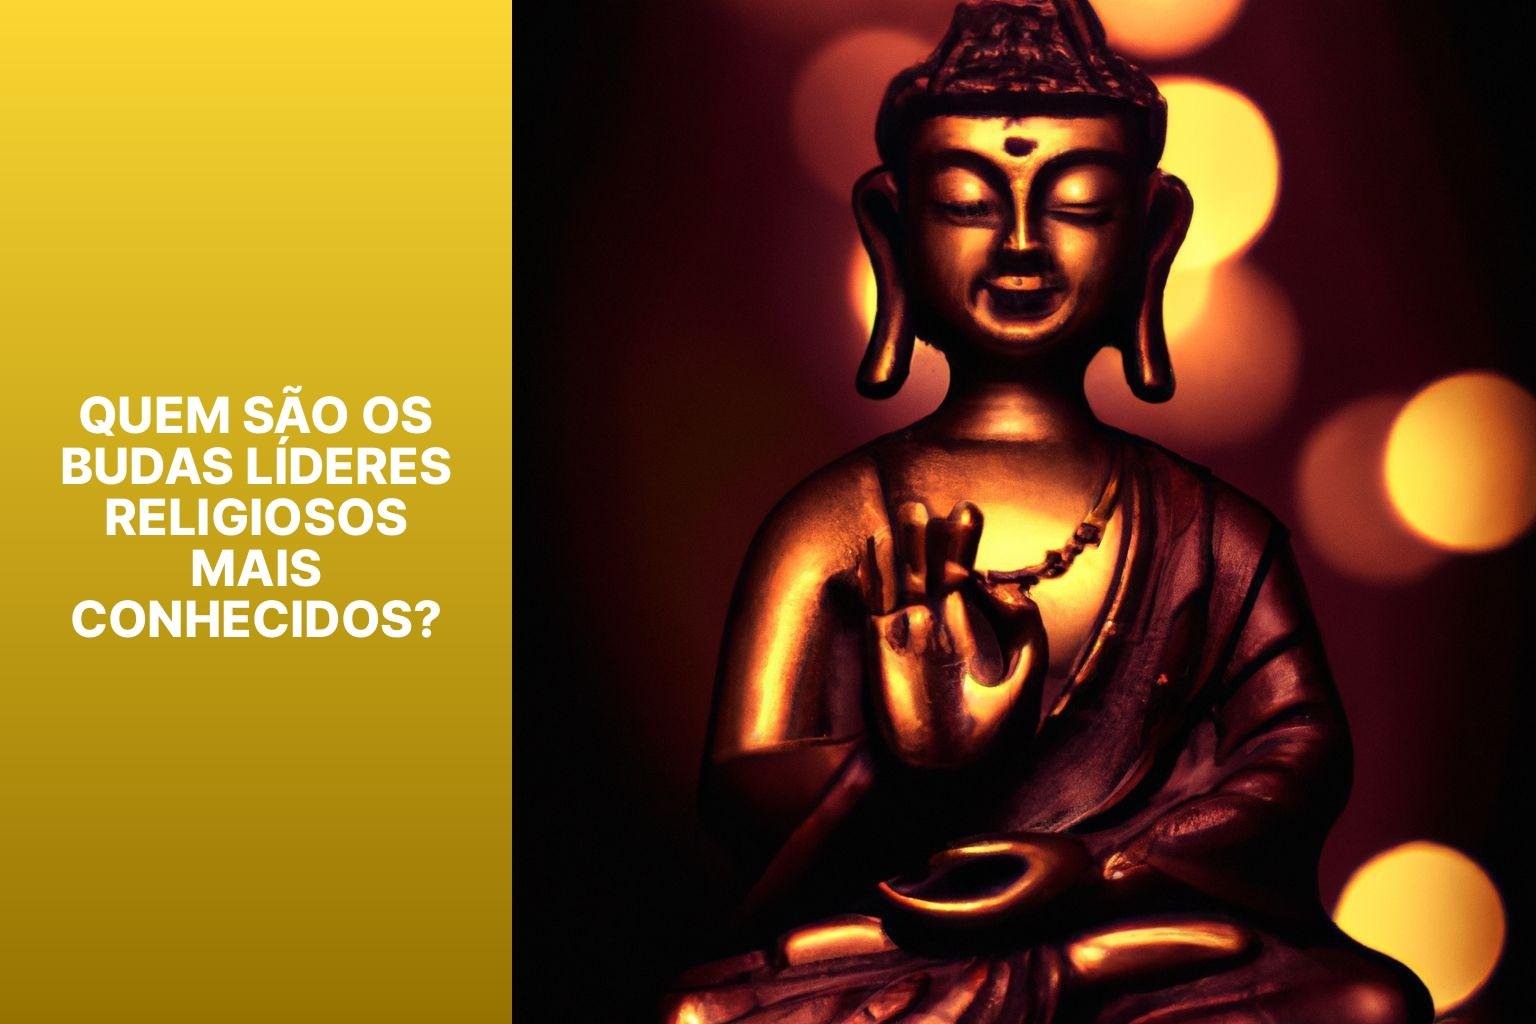 Quem são os Budas Líderes Religiosos mais conhecidos? - Buda Lider Religioso 